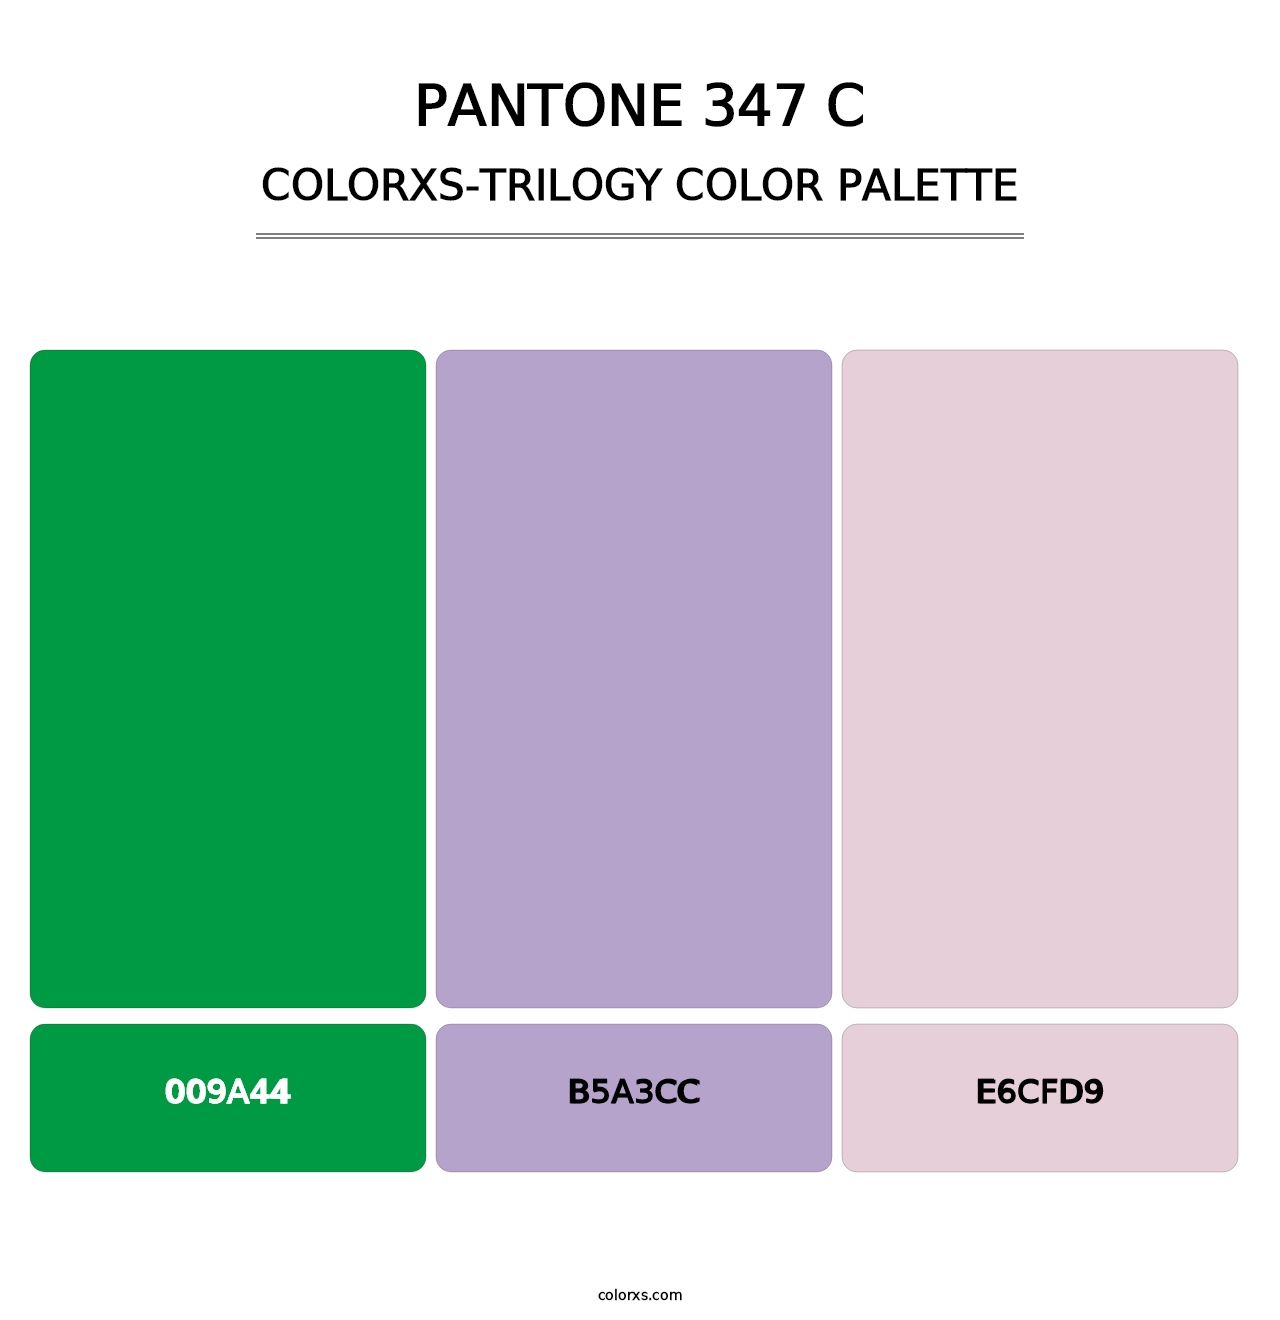 PANTONE 347 C - Colorxs Trilogy Palette